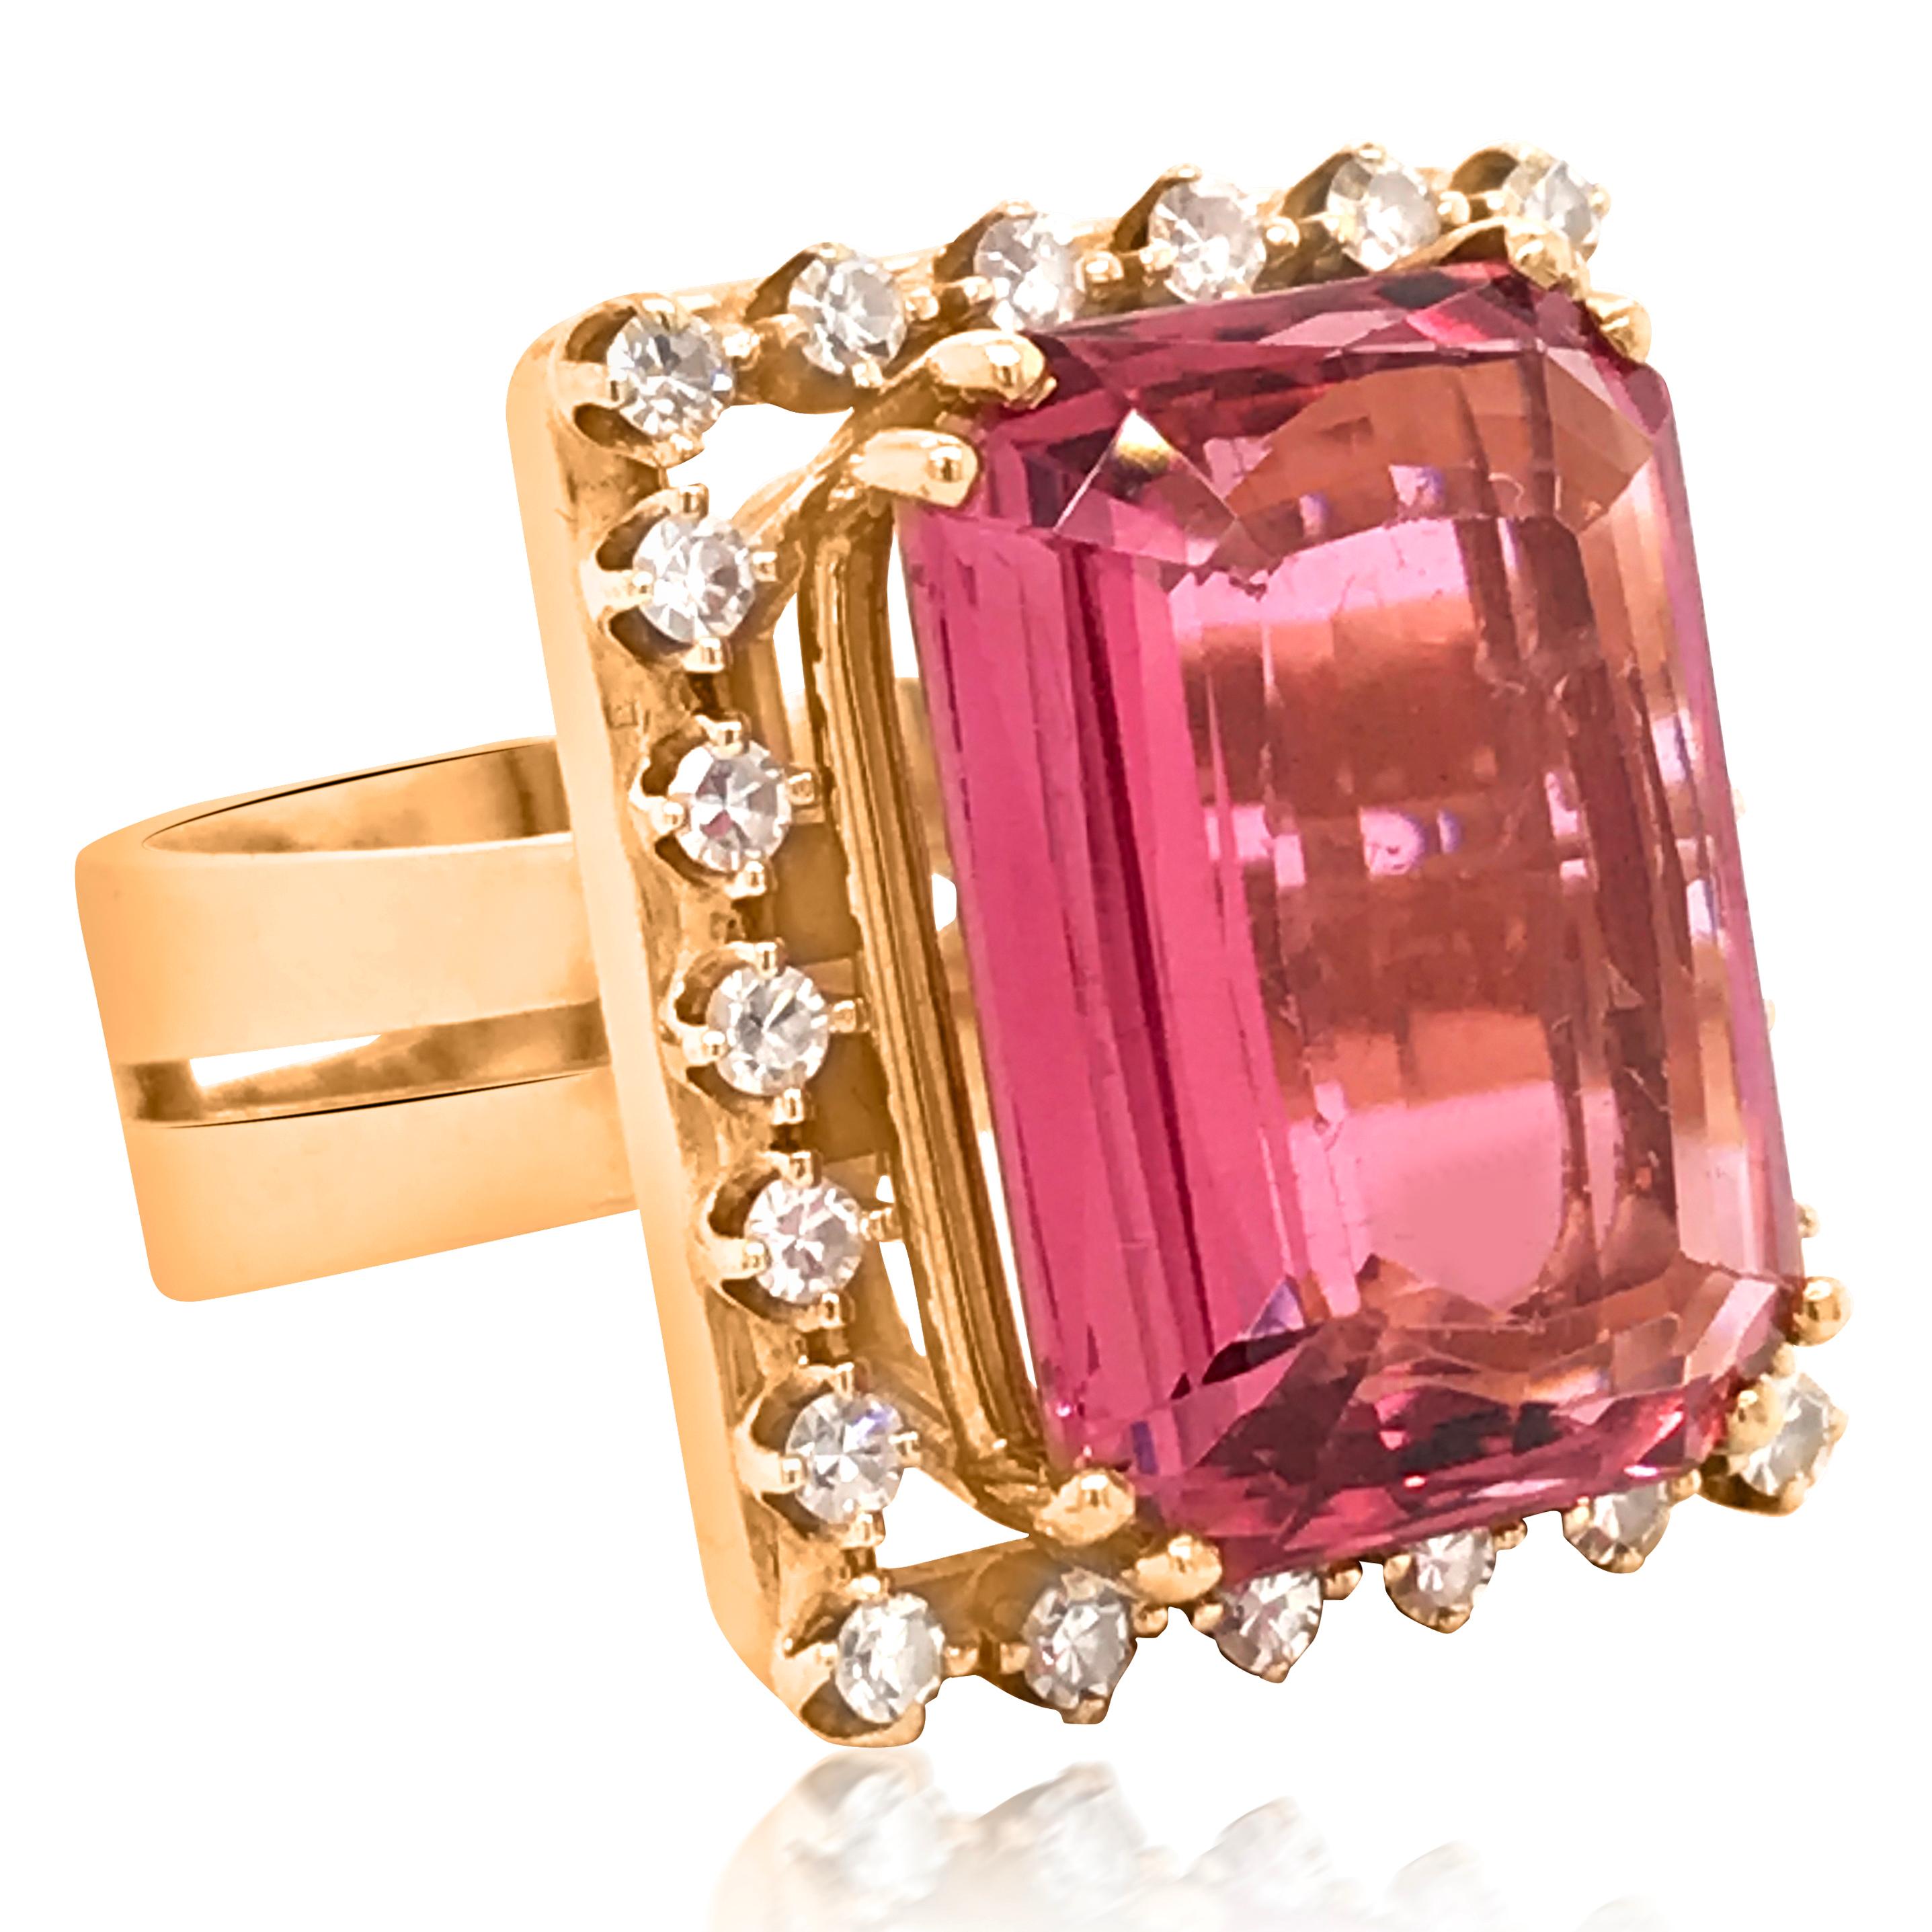 Dieser unwiderstehliche Ring mit rosa Turmalin wurde von PAASH entworfen und in 18 Karat Gelbgold gefertigt. In der Mitte befindet sich ein echter rosa Turmalin im Kissenschliff mit den Maßen 17,40 x 12,70 x 6,65 mm und einem Gewicht von ca. 11,5ct.